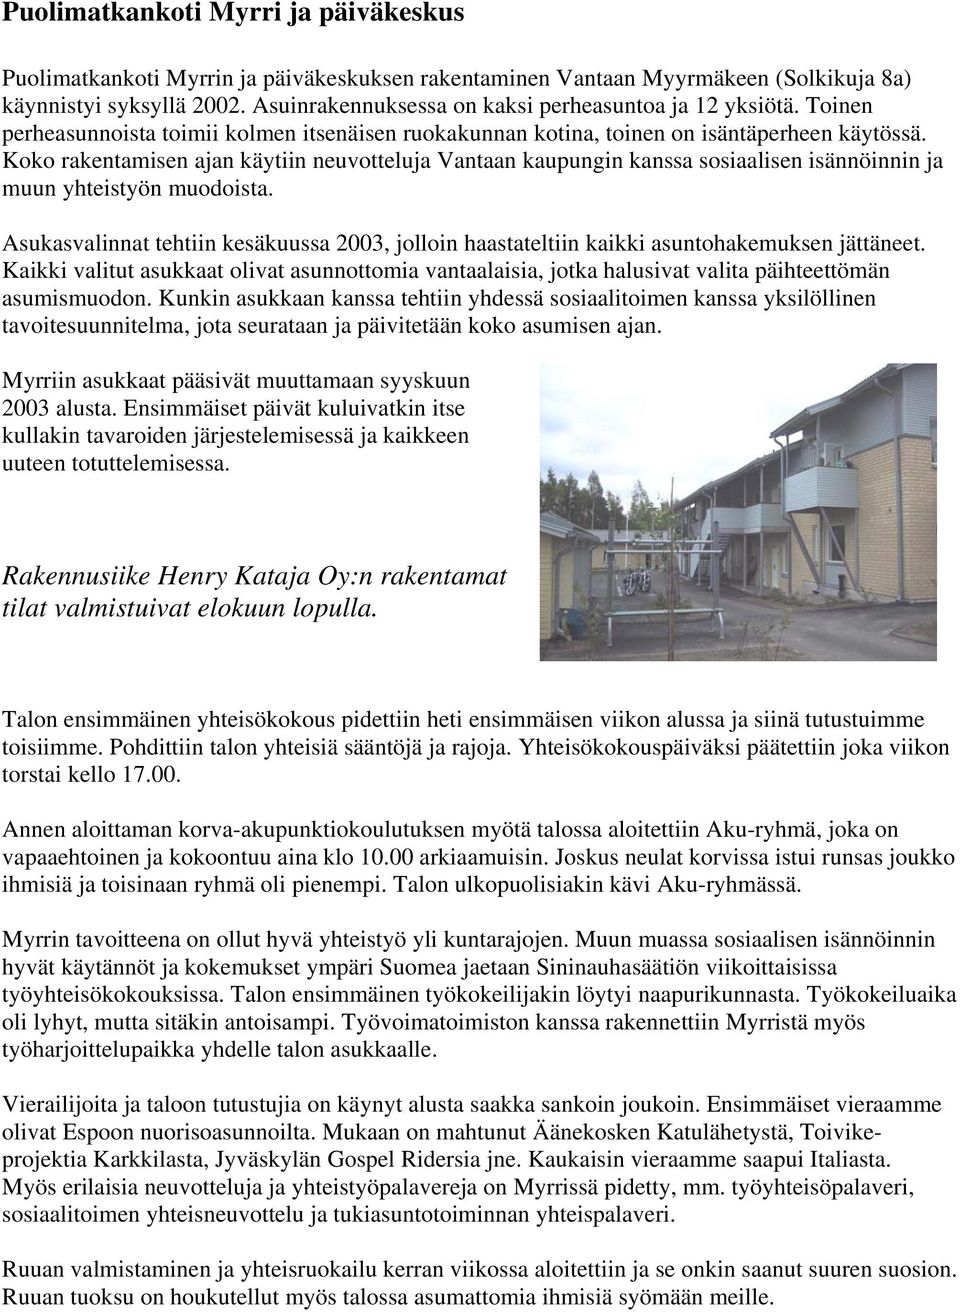 Koko rakentamisen ajan käytiin neuvotteluja Vantaan kaupungin kanssa sosiaalisen isännöinnin ja muun yhteistyön muodoista.